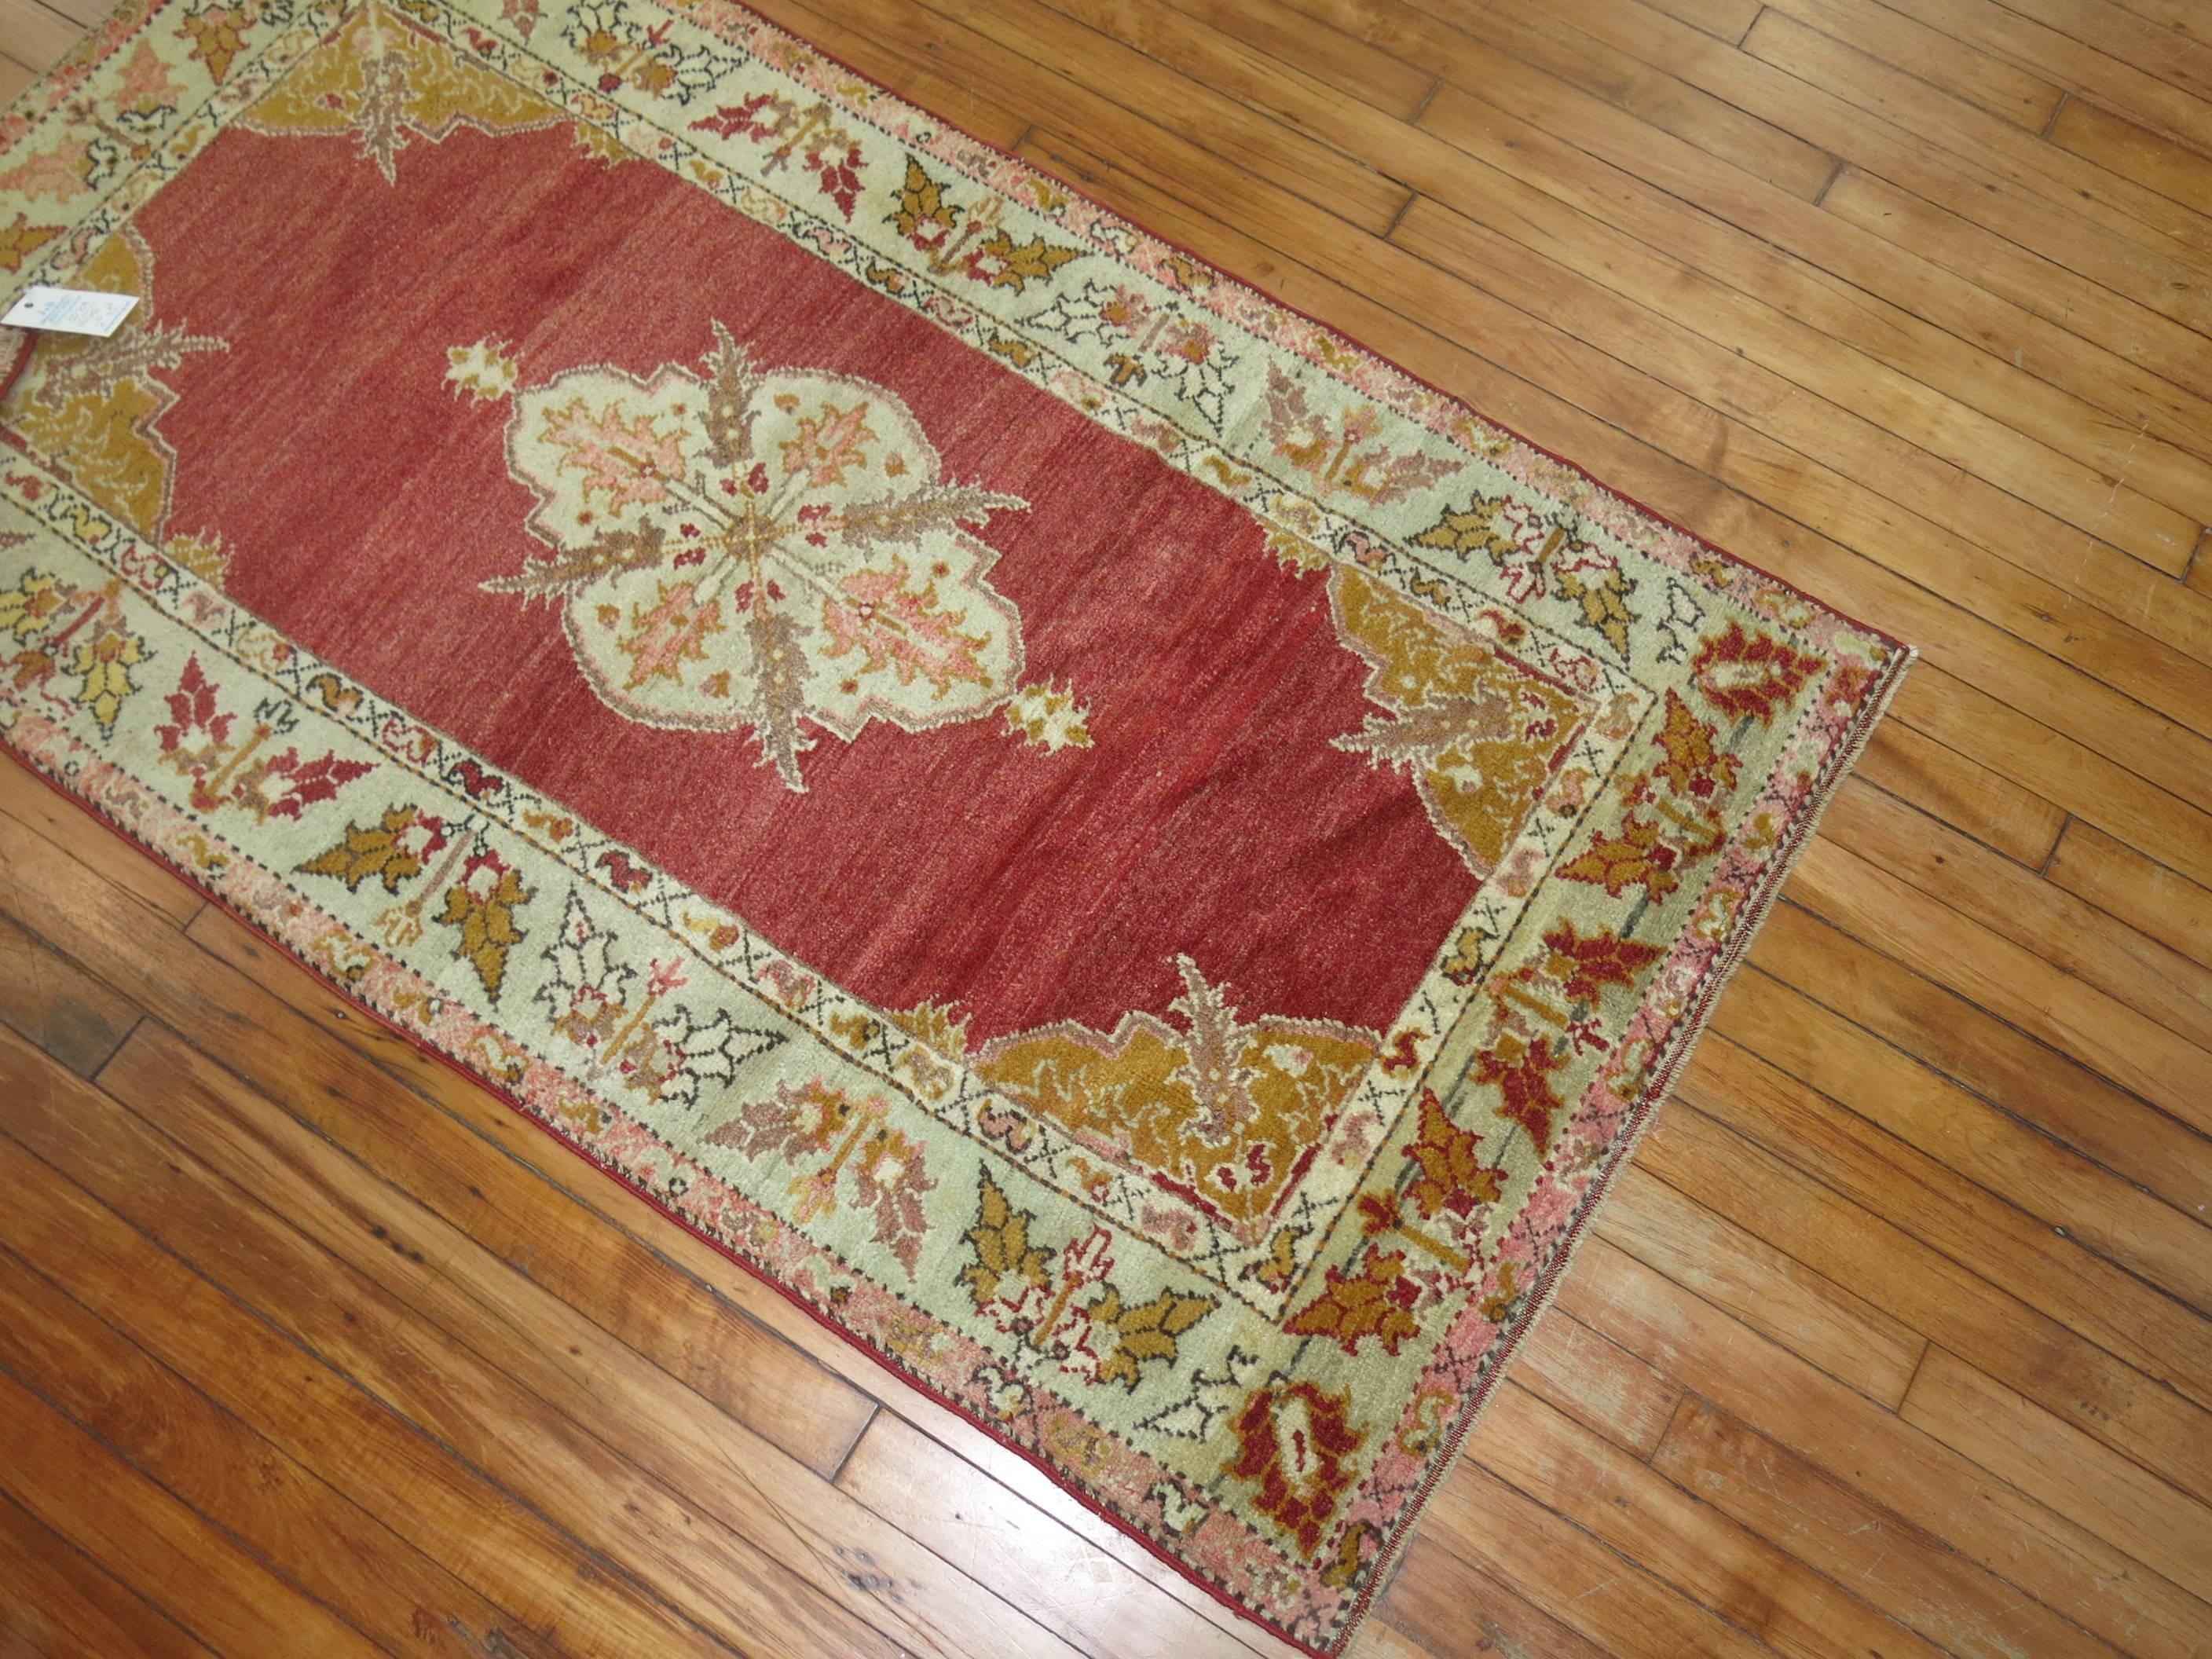 Hochwertiger türkischer Teppich aus dem frühen 20. Jahrhundert mit einem großzügigen roten Medaillonmuster in offenem Feld.